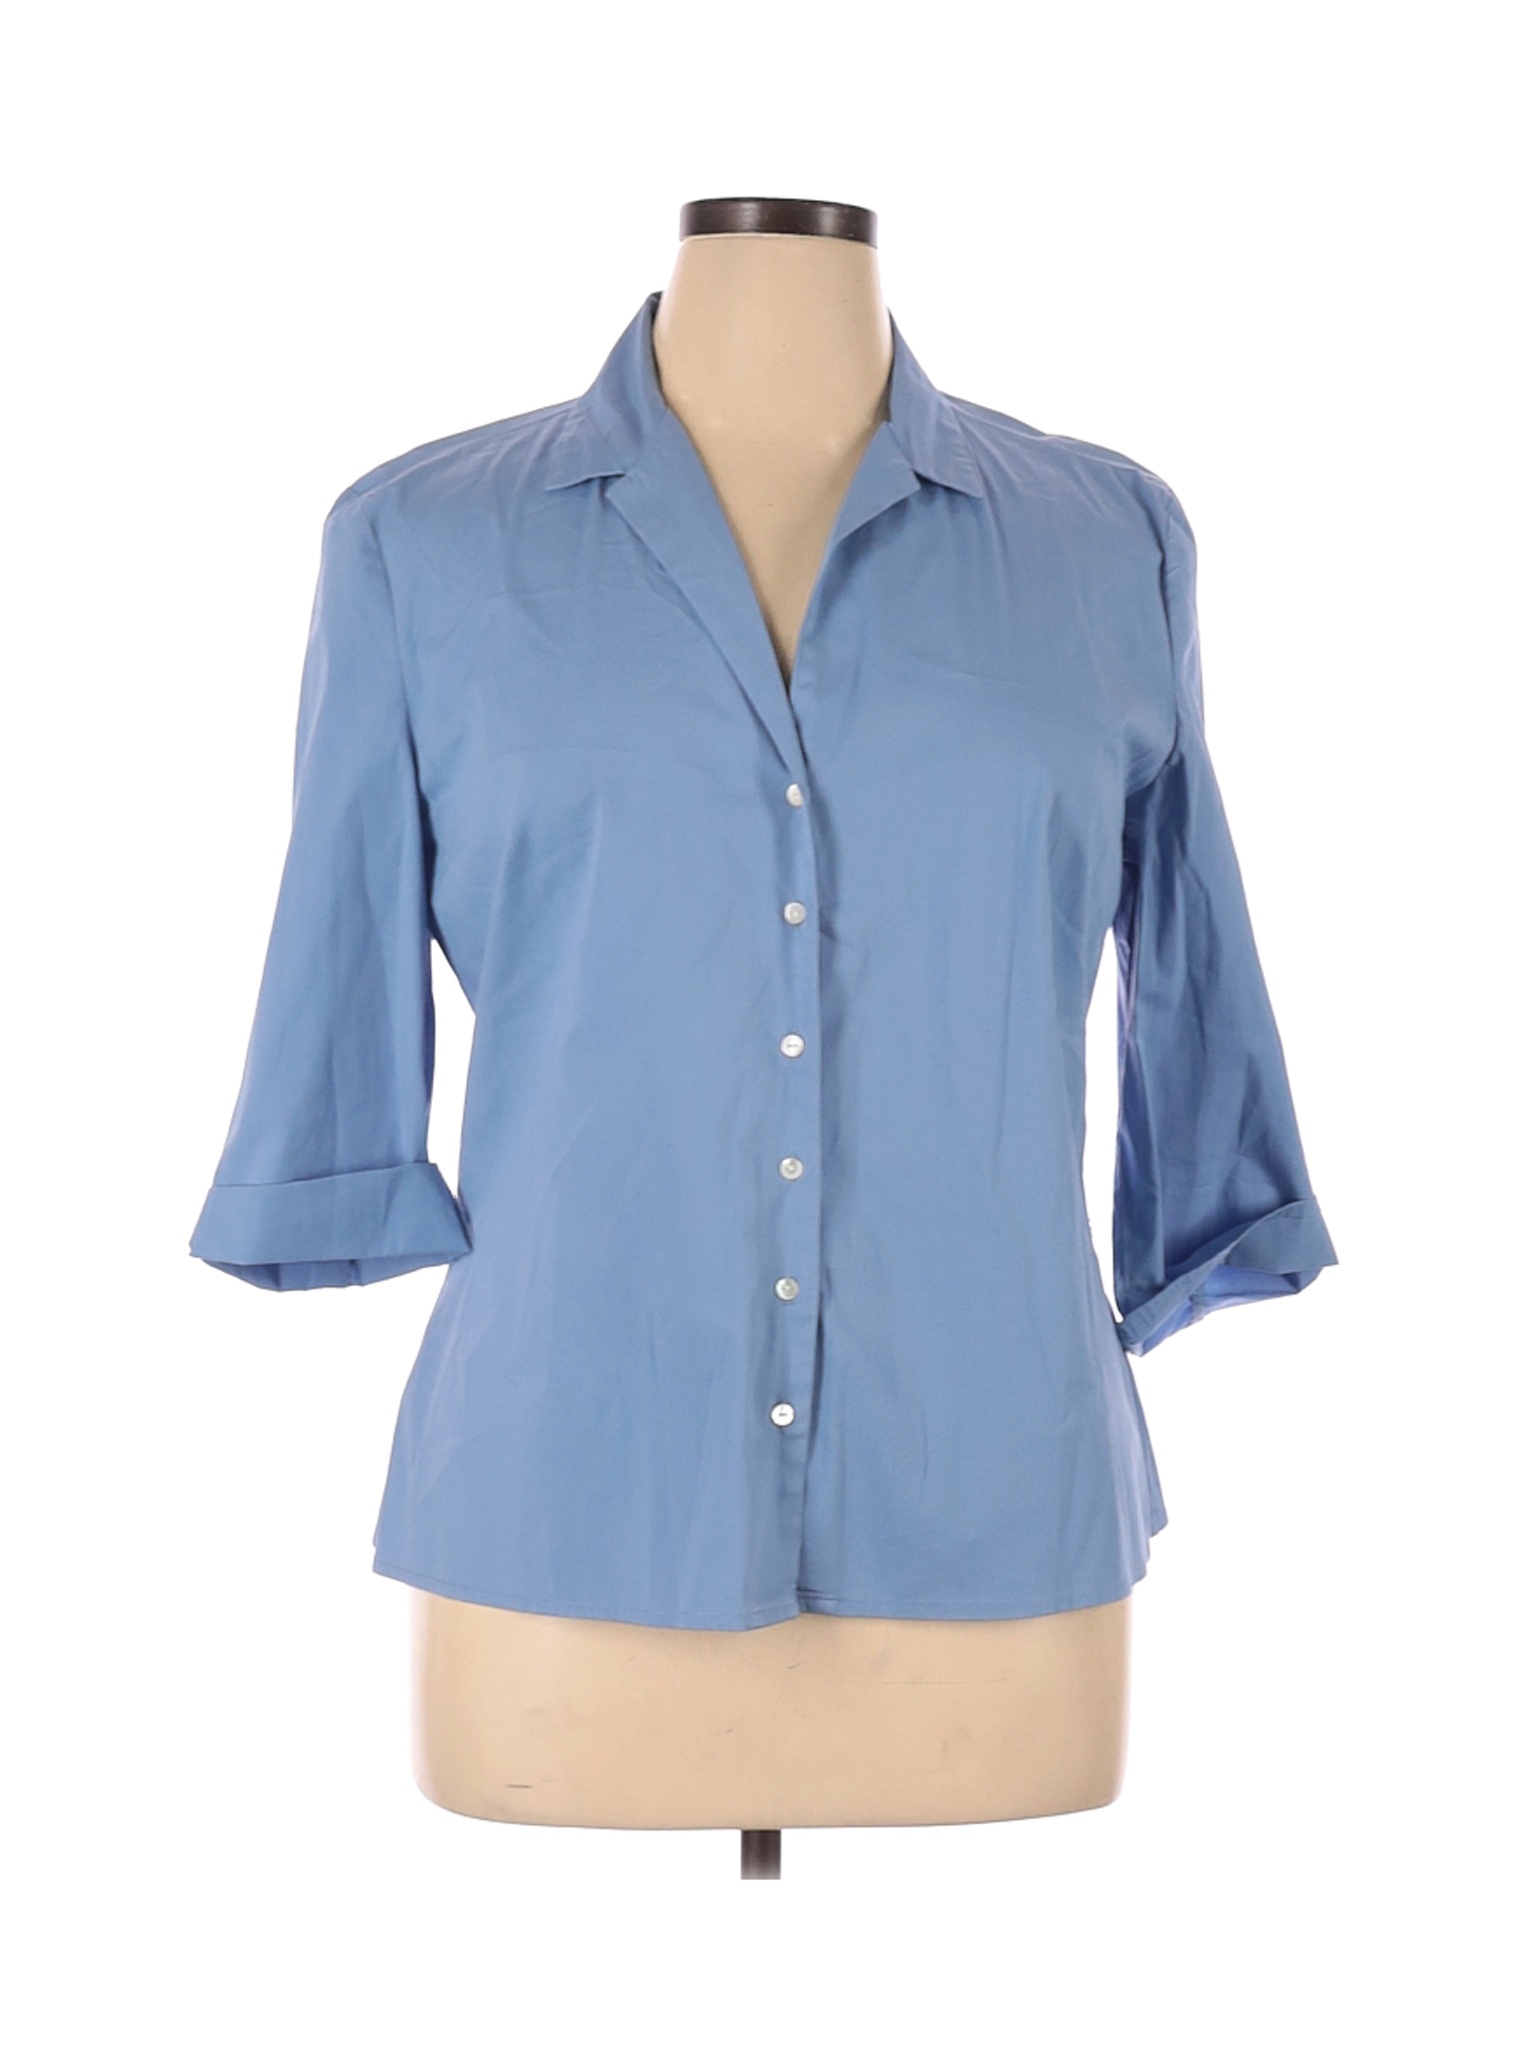 Gap Women Blue Long Sleeve Button-Down Shirt XL | eBay